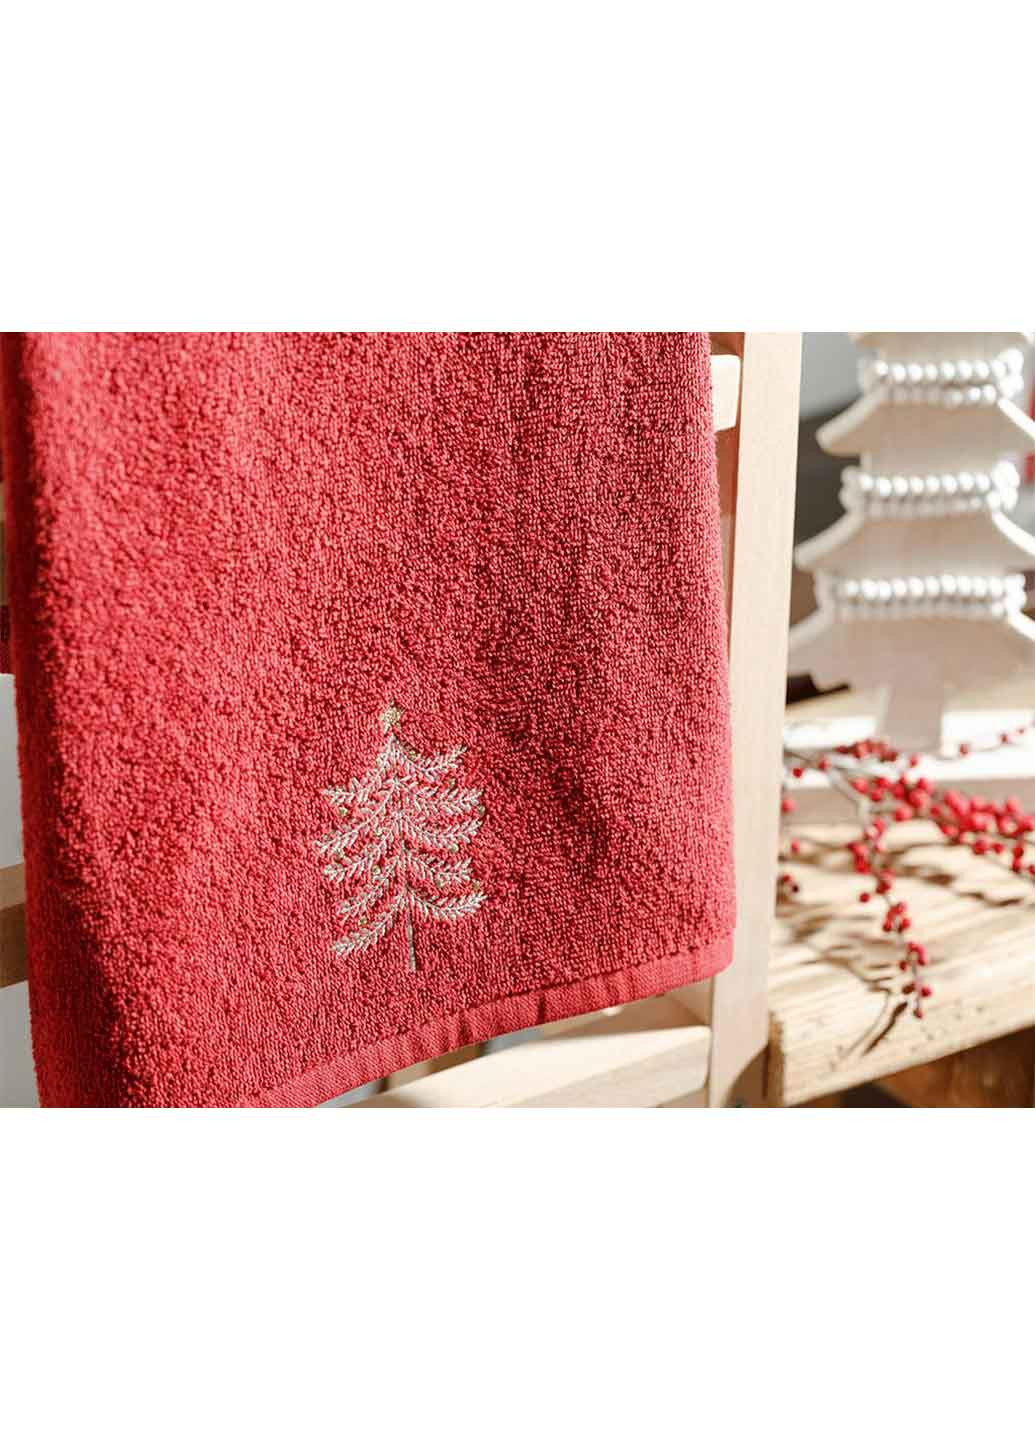 English Home полотенце, 40х60 см новогодний темно-красный производство - Турция